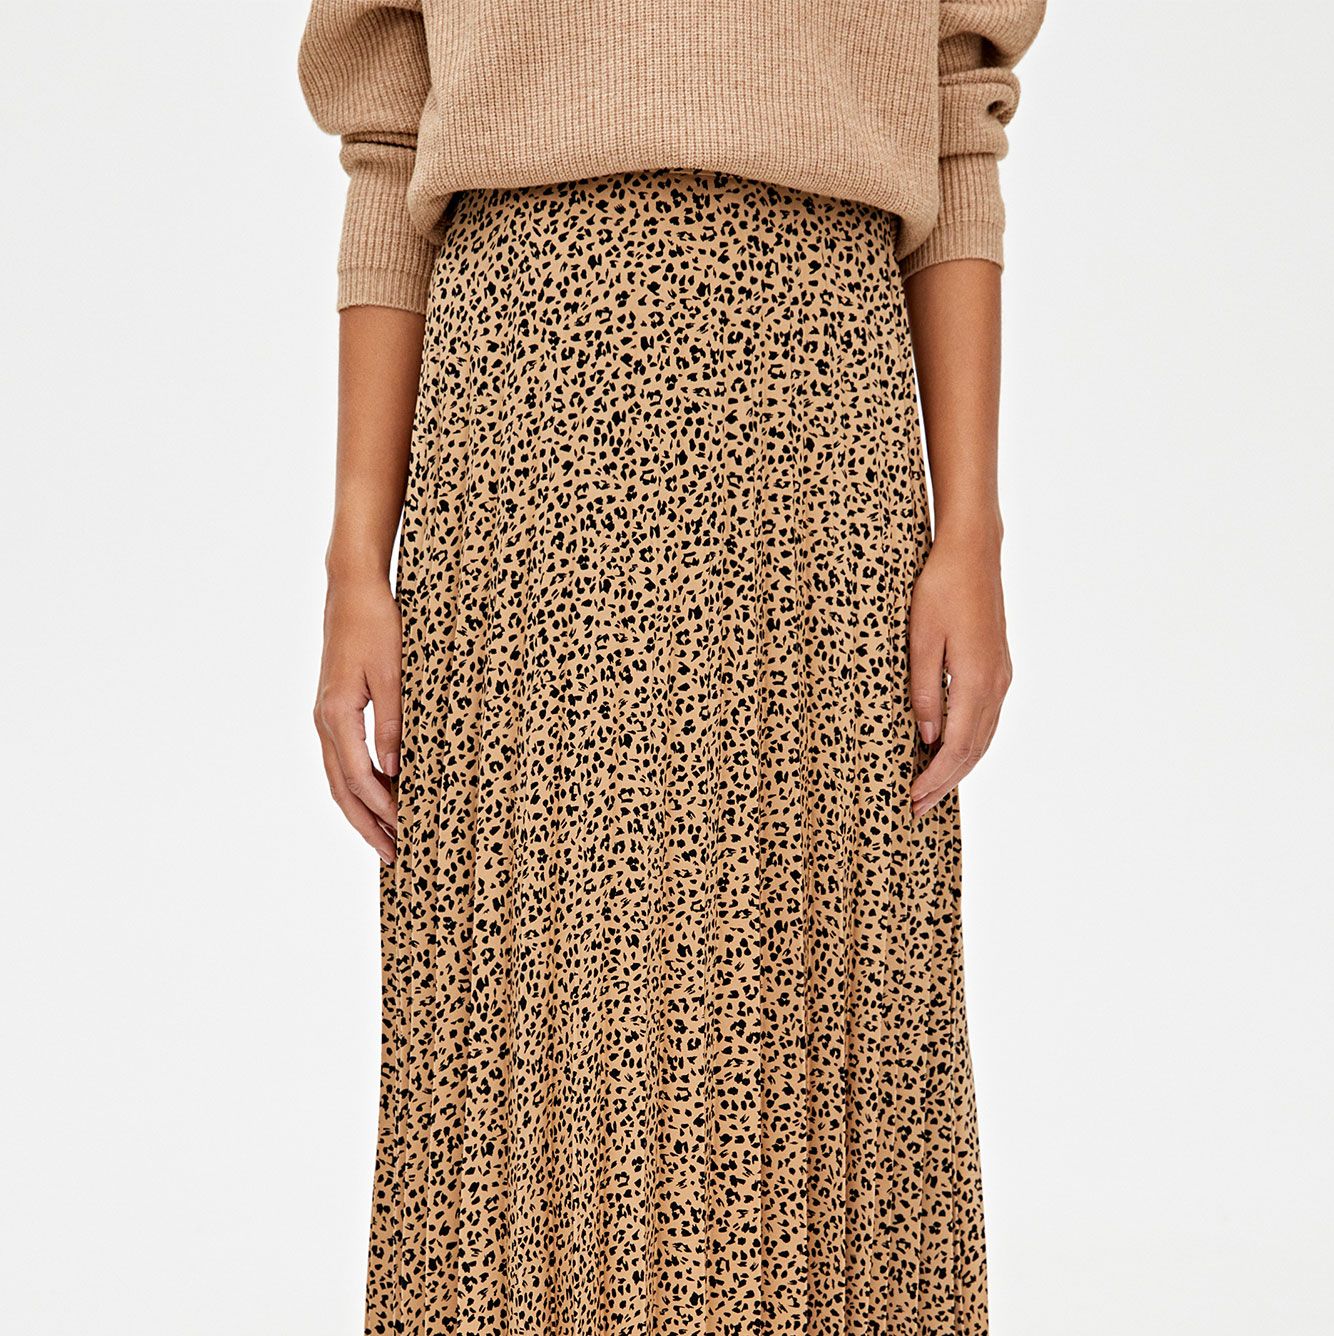 Hay una necesidad de Leer Significativo La falda larga de leopardo de Pull&Bear que llevarás con botas